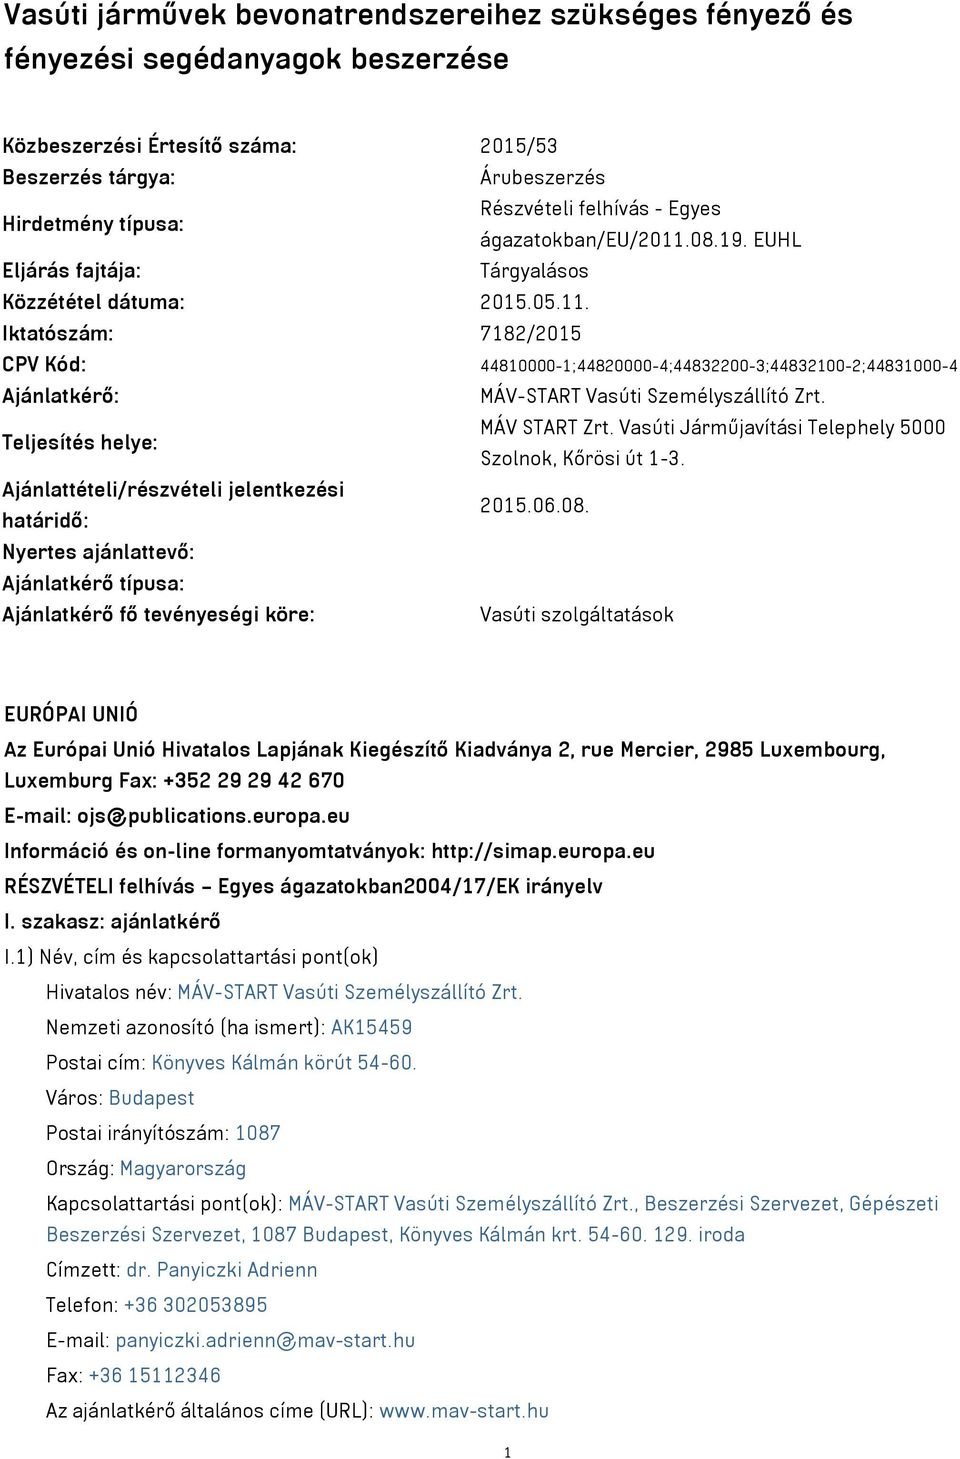 Teljesítés helye: MÁV START Zrt. Vasúti Járműjavítási Telephely 5000 Szolnok, Kőrösi út 1-3. Ajánlattételi/részvételi jelentkezési határidő: 2015.06.08.